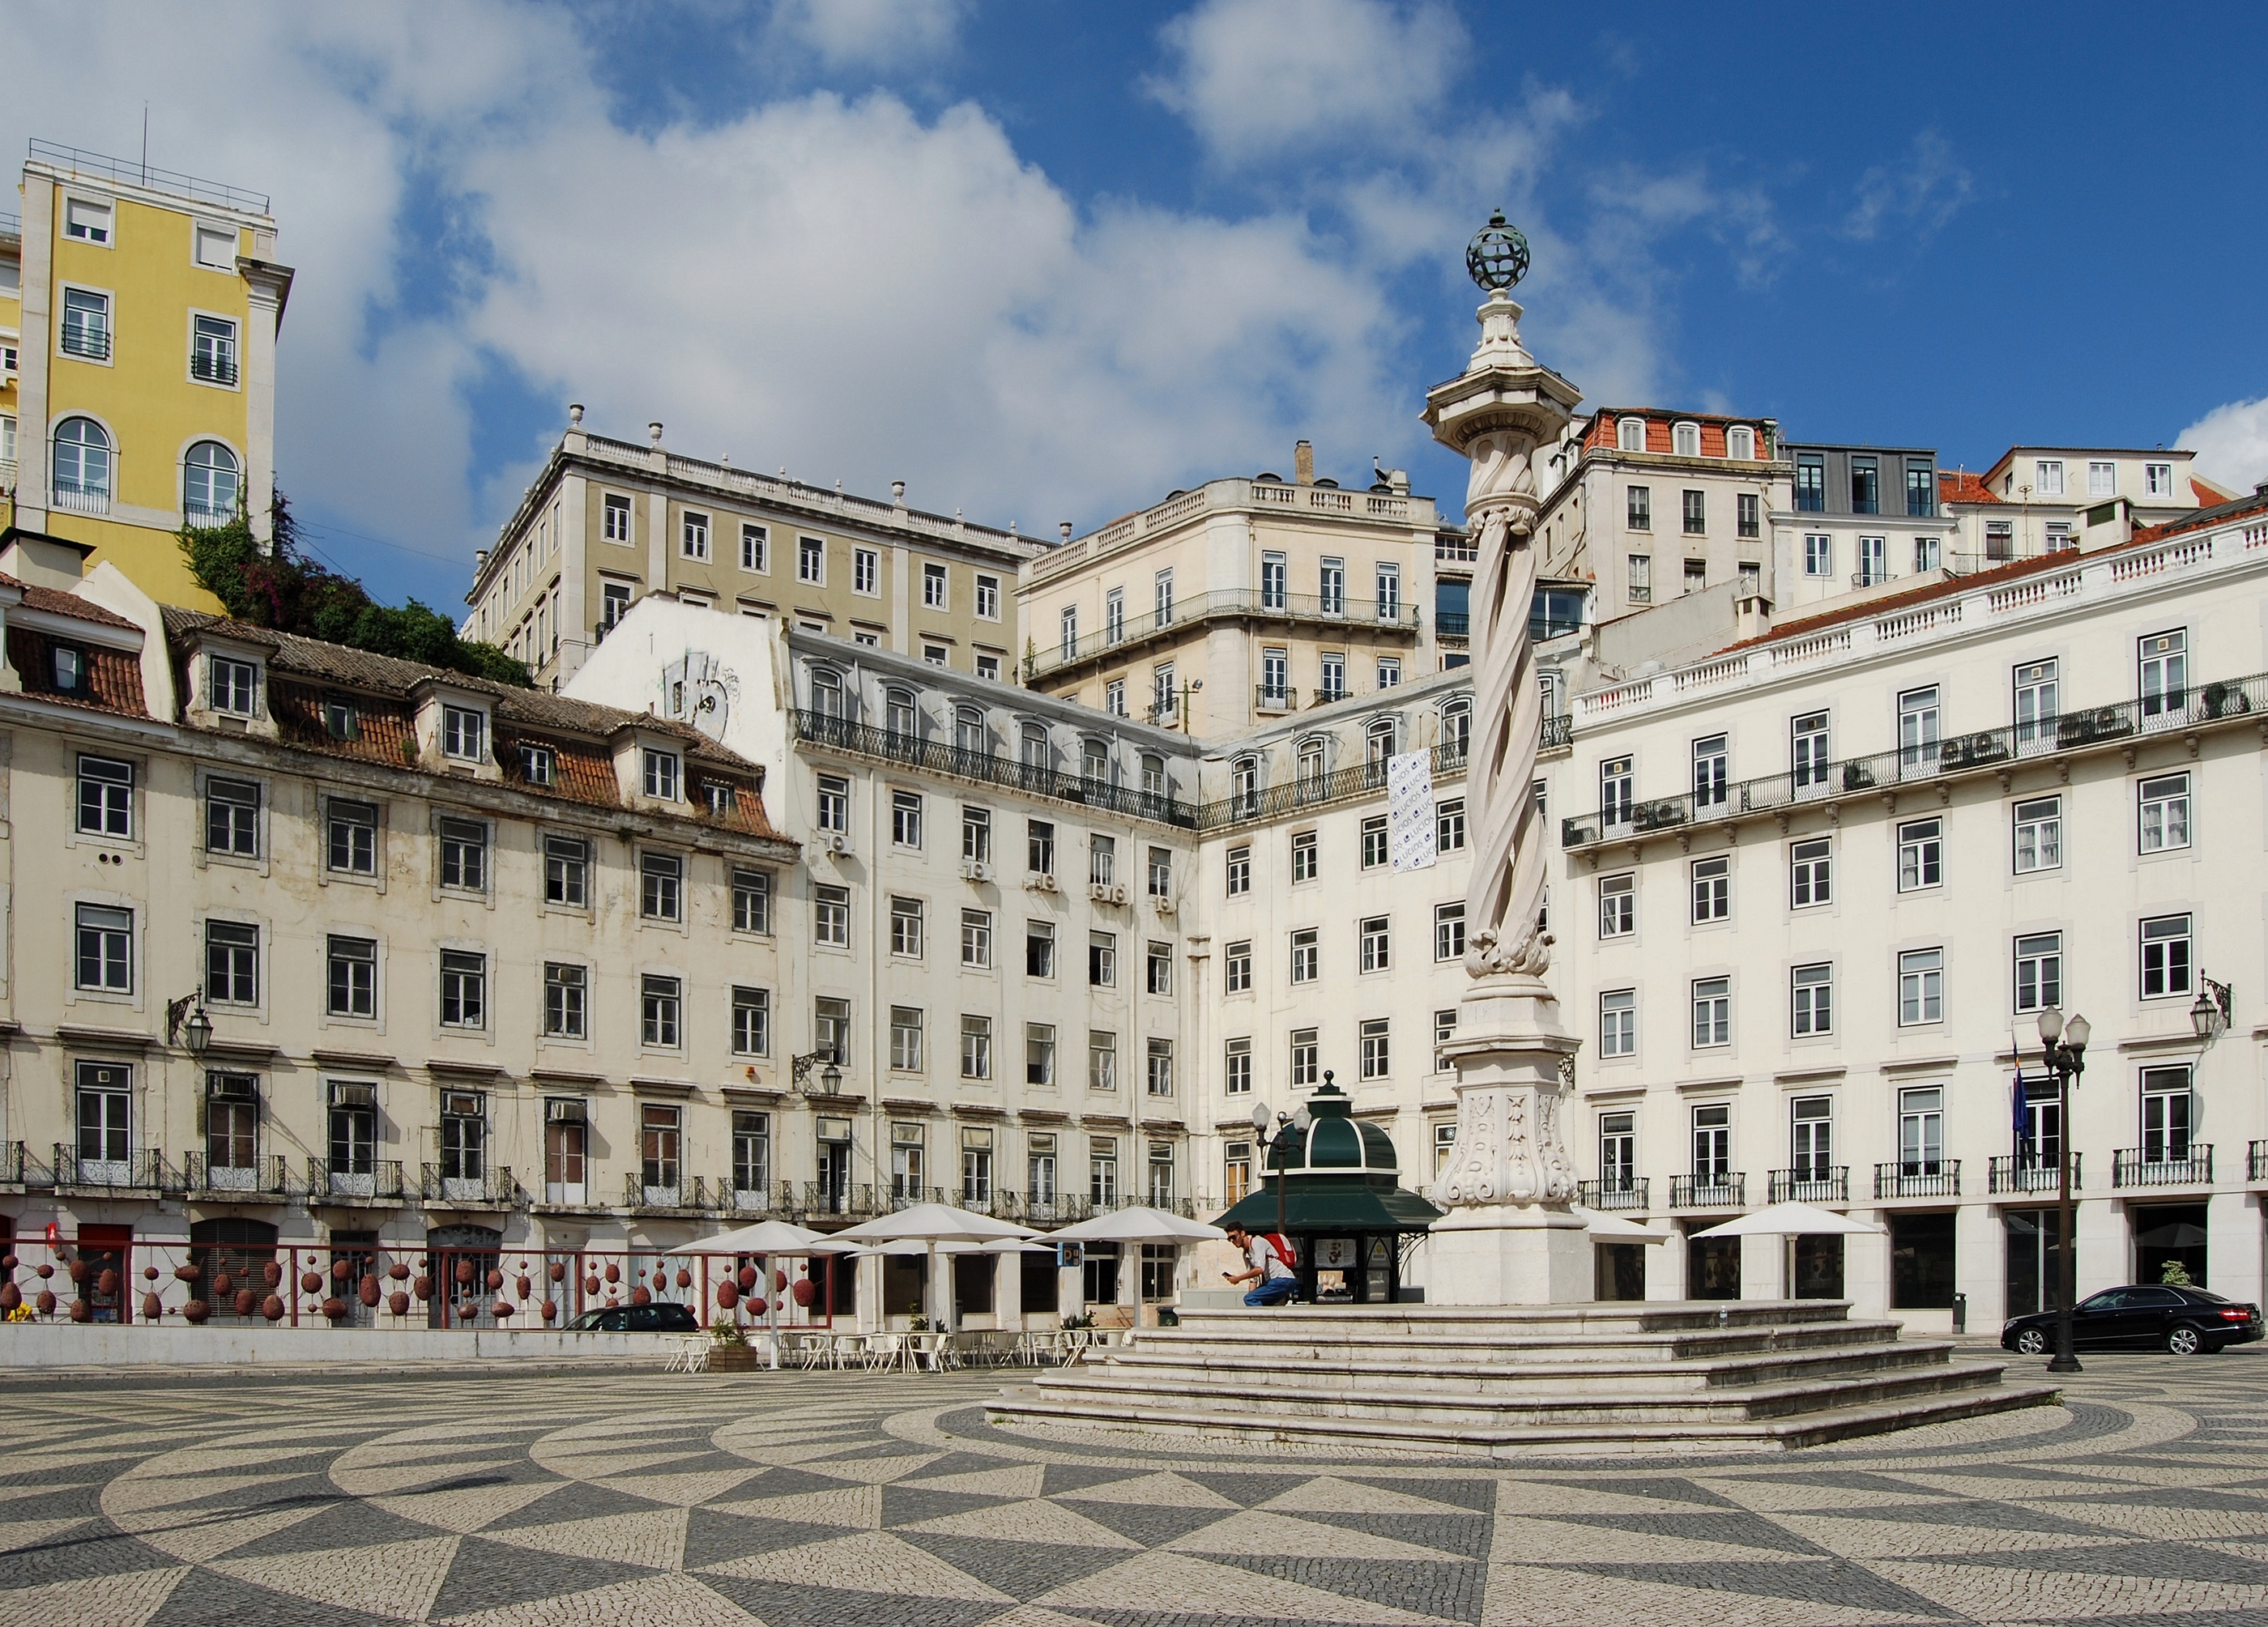 Praça do Município Lissabon September 2014